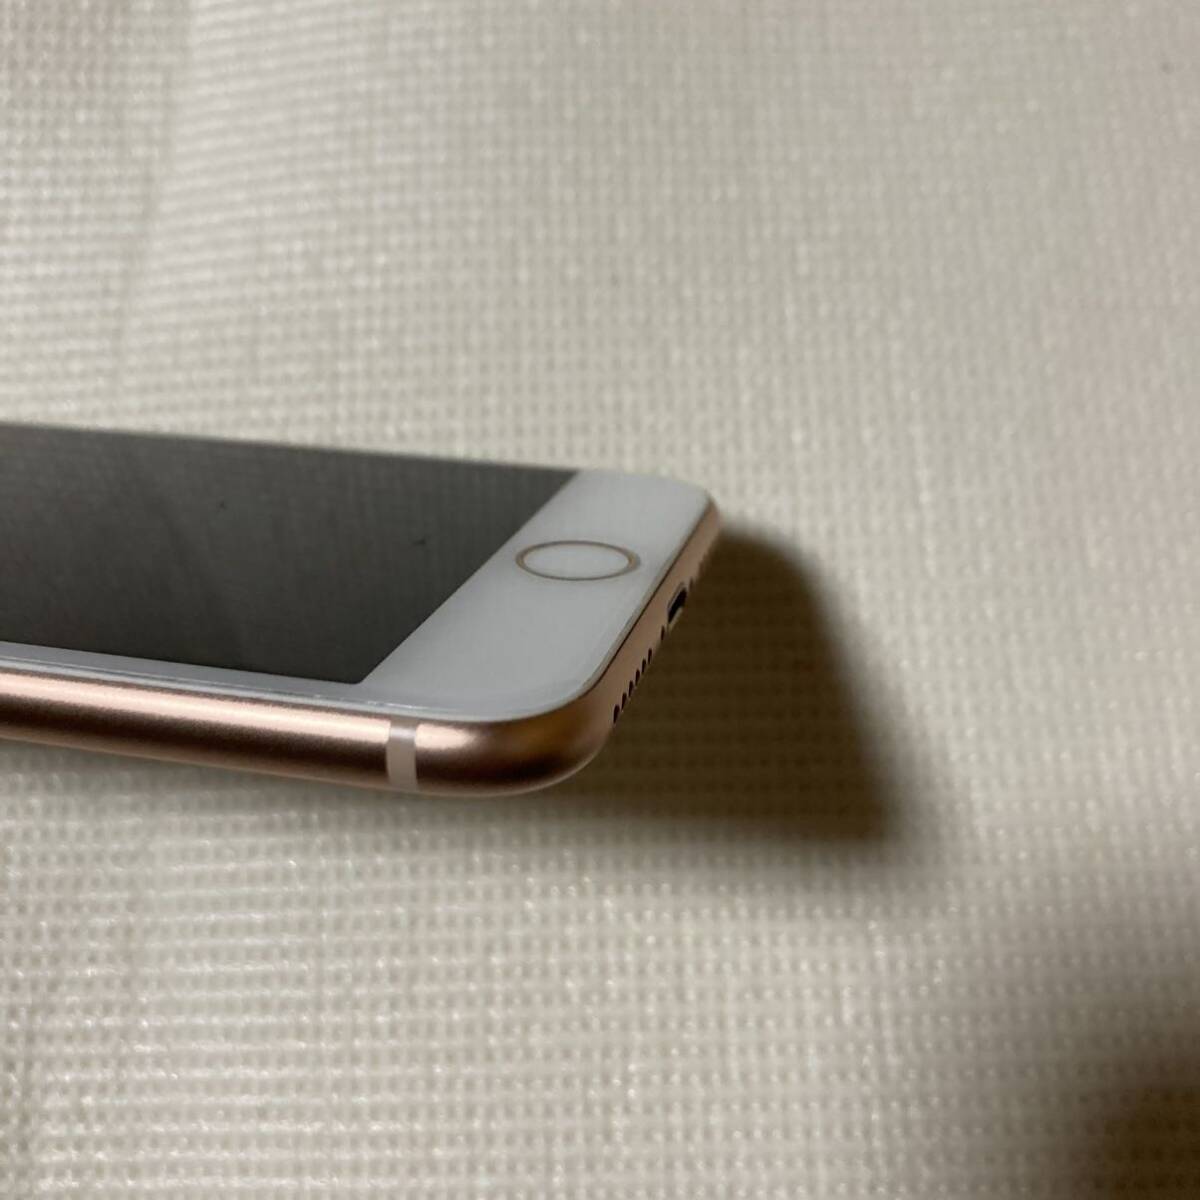 送料無料 超美品 SIMフリー iPhone8 256GB ゴールド バッテリー最大容量100% SIMロック解除済 付属品